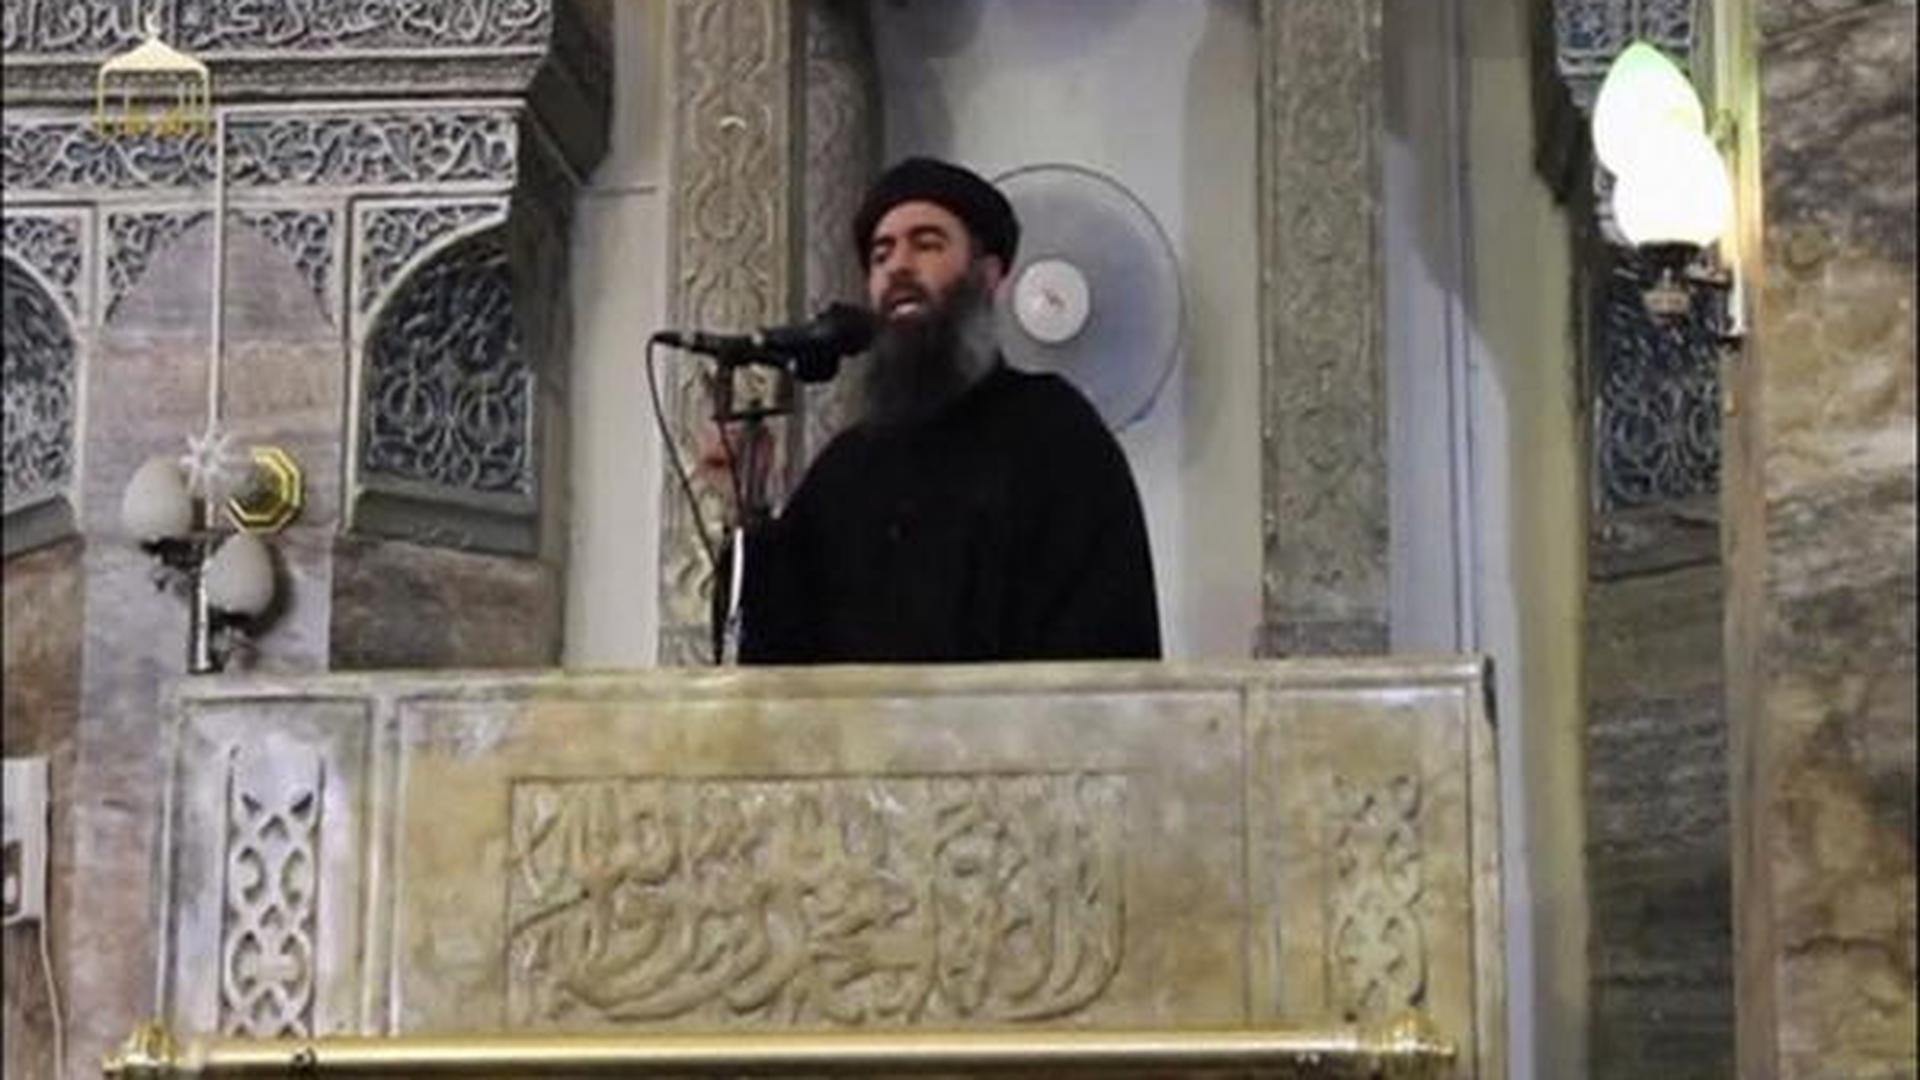 Si elle était confirmée, la mort de Baghdadi porterait un nouveau coup dur au groupe extrémiste sunnite.